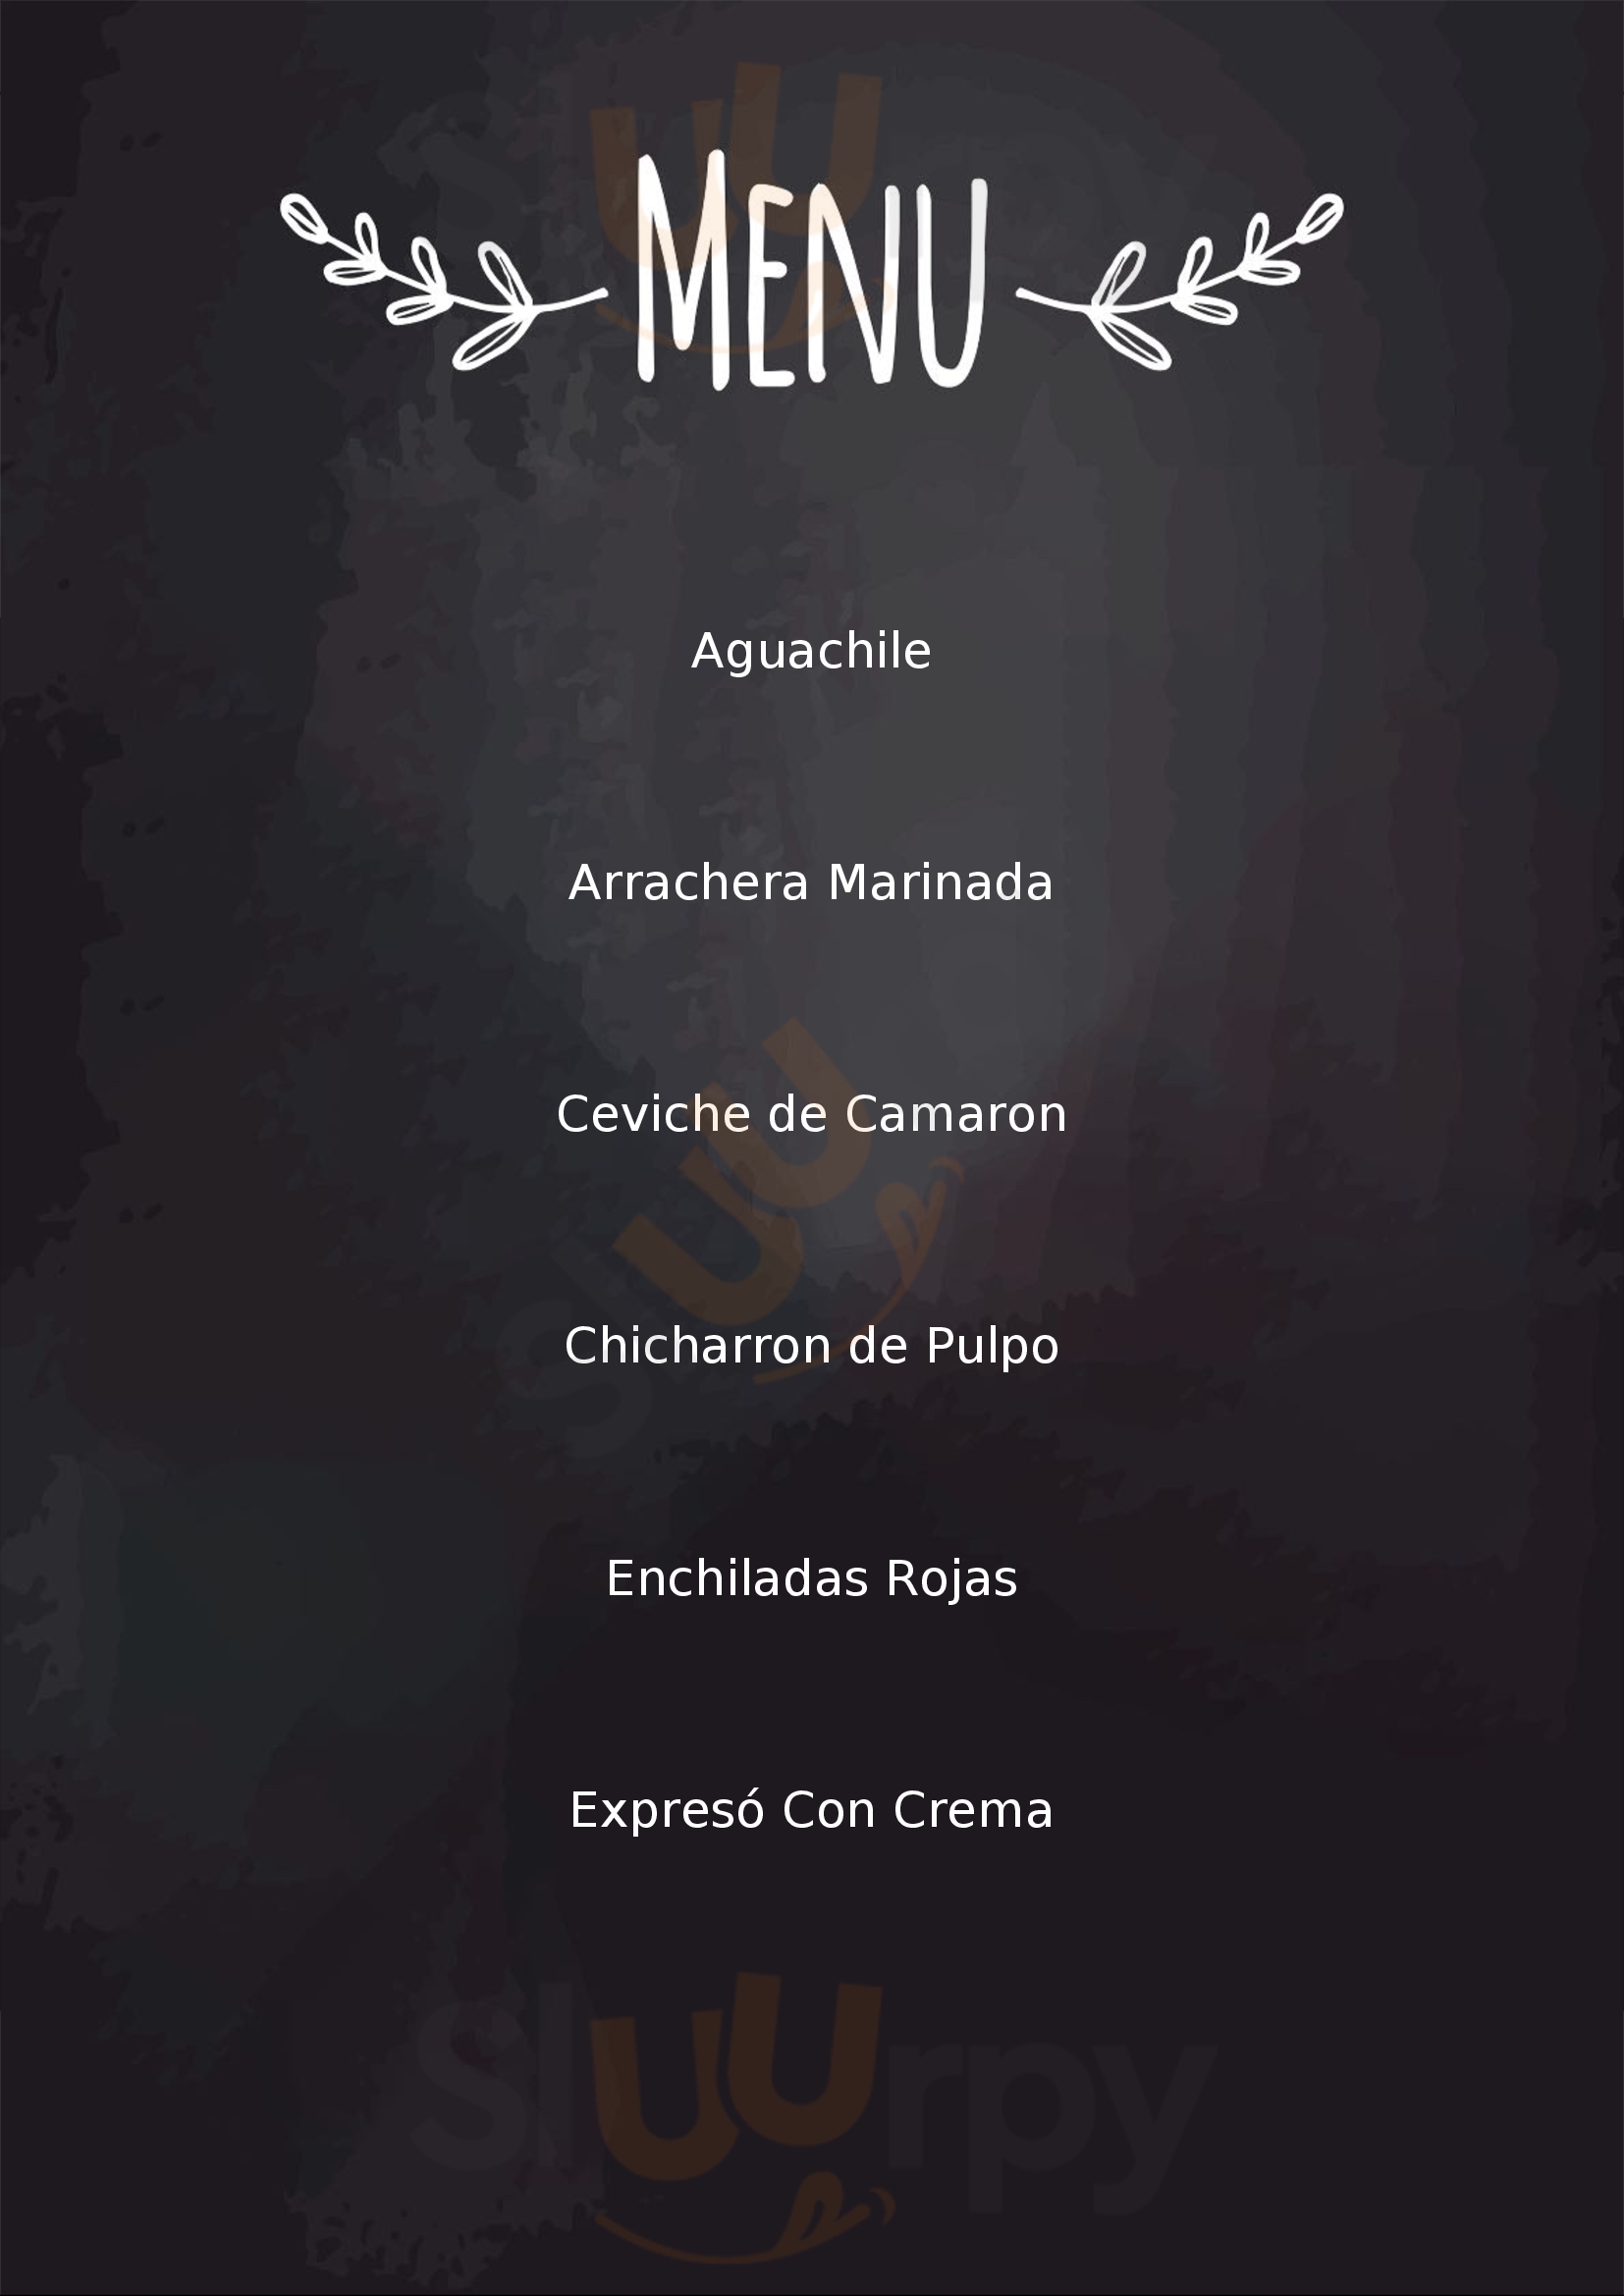 La Ensenada Restaurant Ensenada Menu - 1